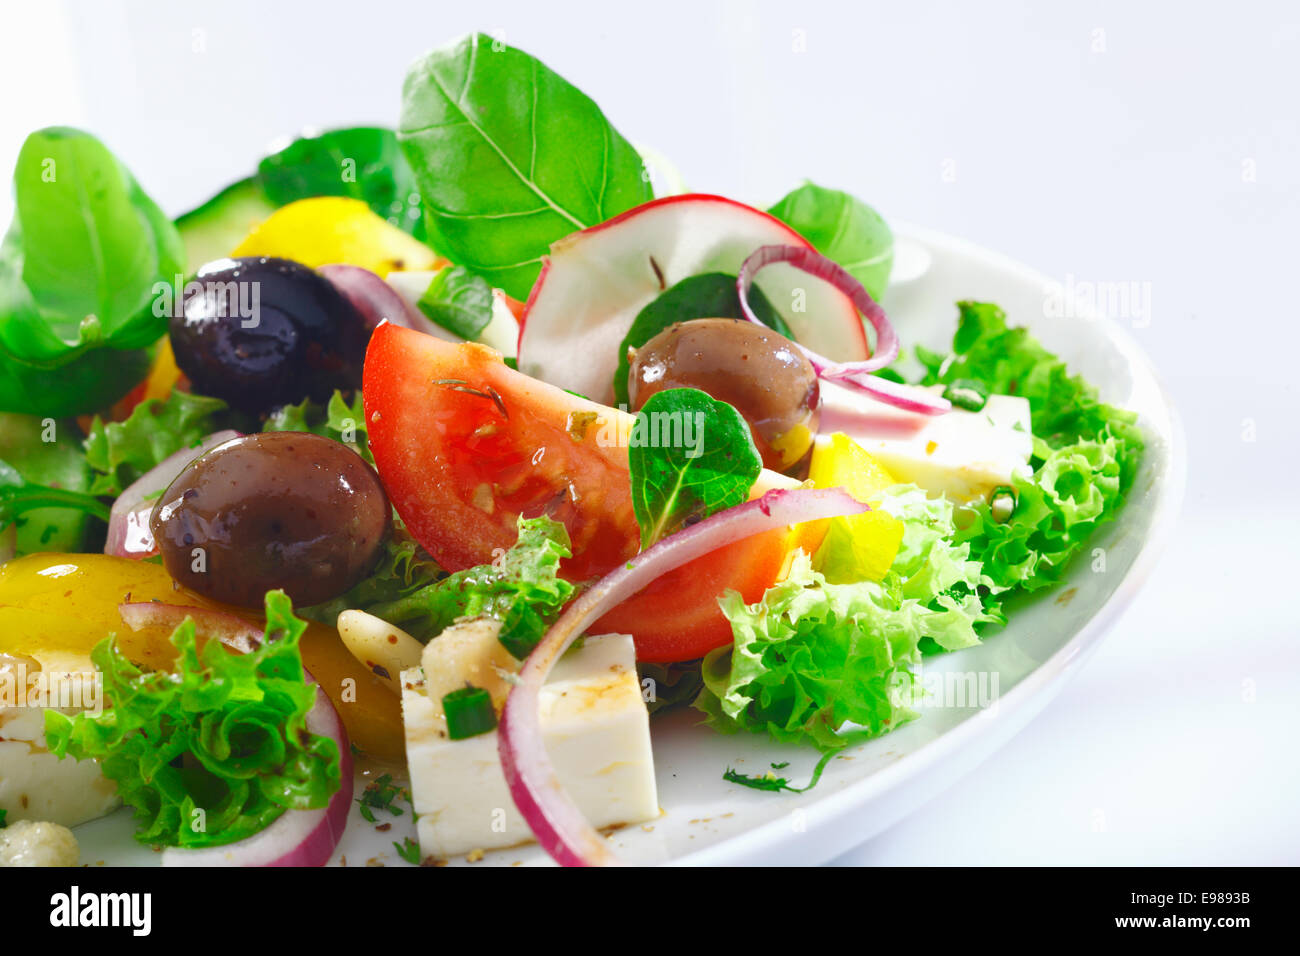 Detailansicht einer Portion knackige appetitlich griechischer Salat mit Kopfsalat, Basilikum, Schafskäse, Zwiebeln, Oliven, Radieschen und Tomaten Stockfoto